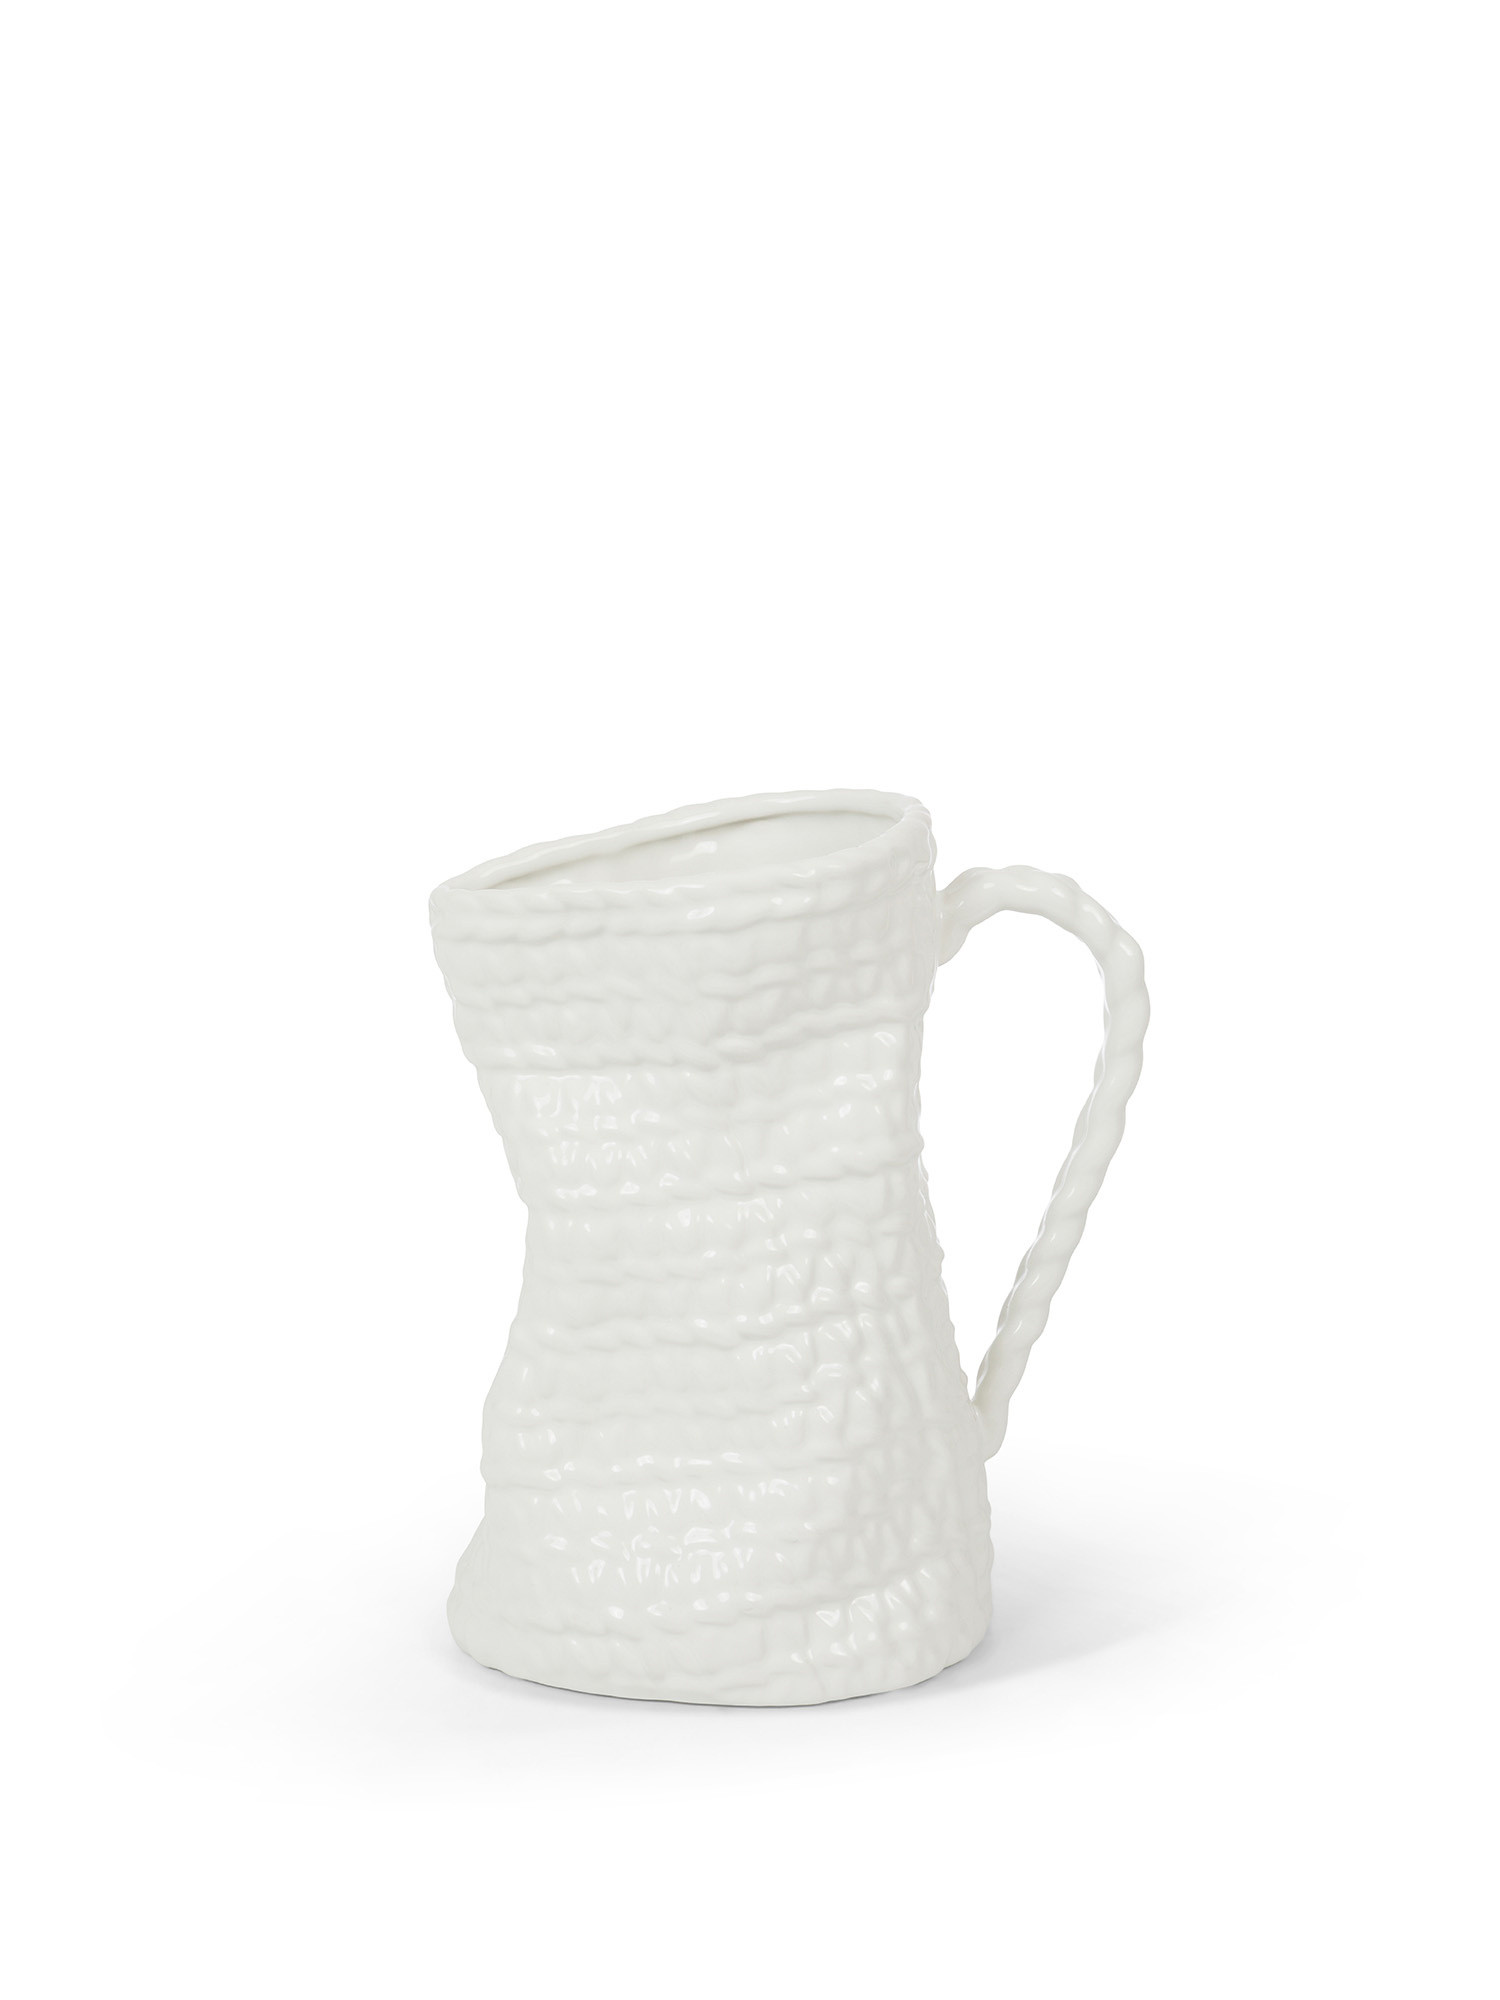 Brocca decorativa in ceramica, Bianco, large image number 0